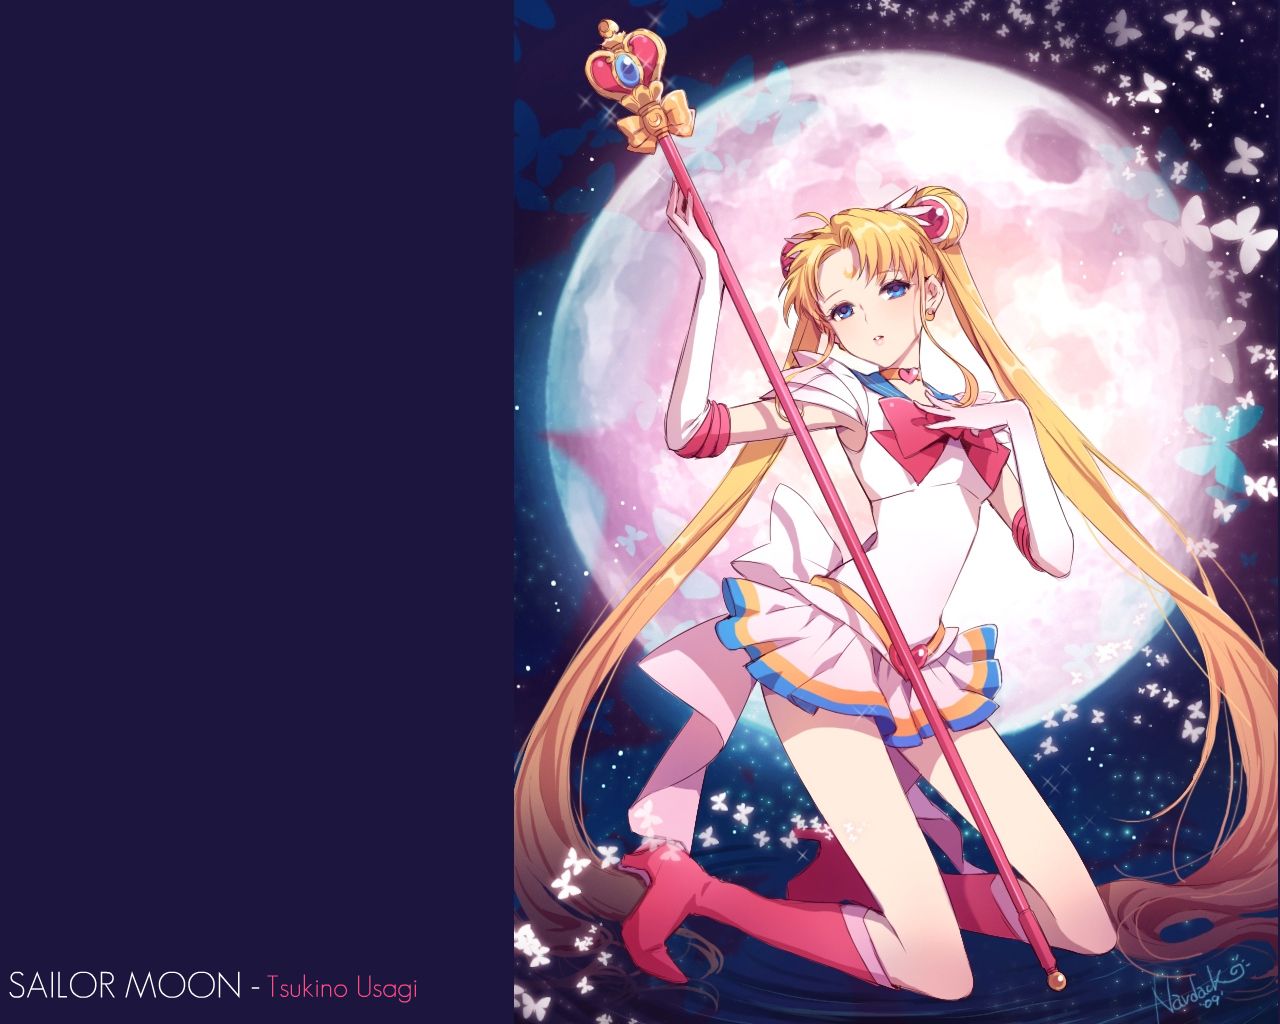 Sailor Moon Fondos de escritorio Escritorio 1280x1024 px - 4USkY